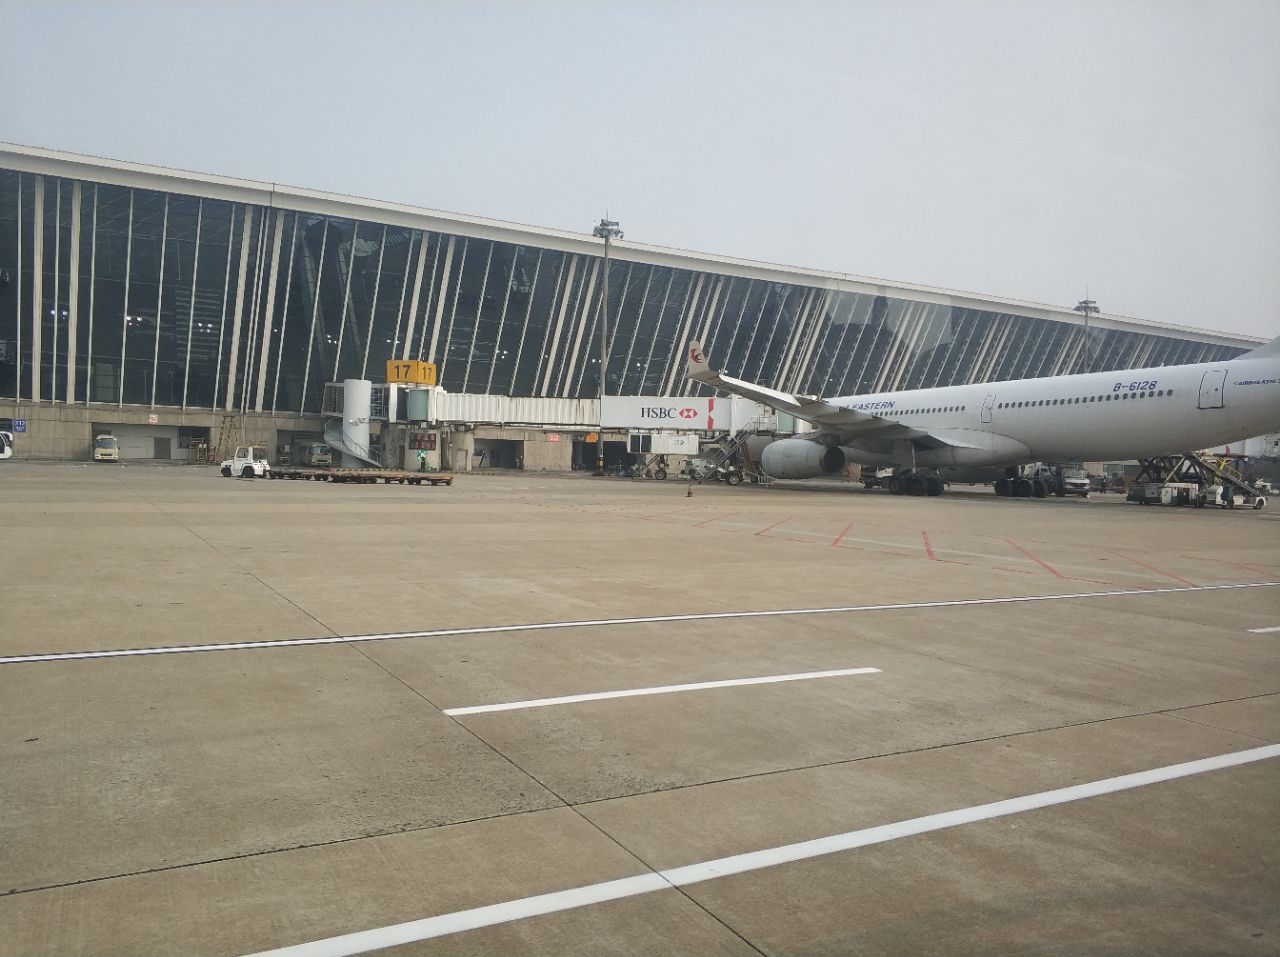 上海浦东国际机场是浦东的空港枢纽,有t1和t2两个航站楼,每天有很多